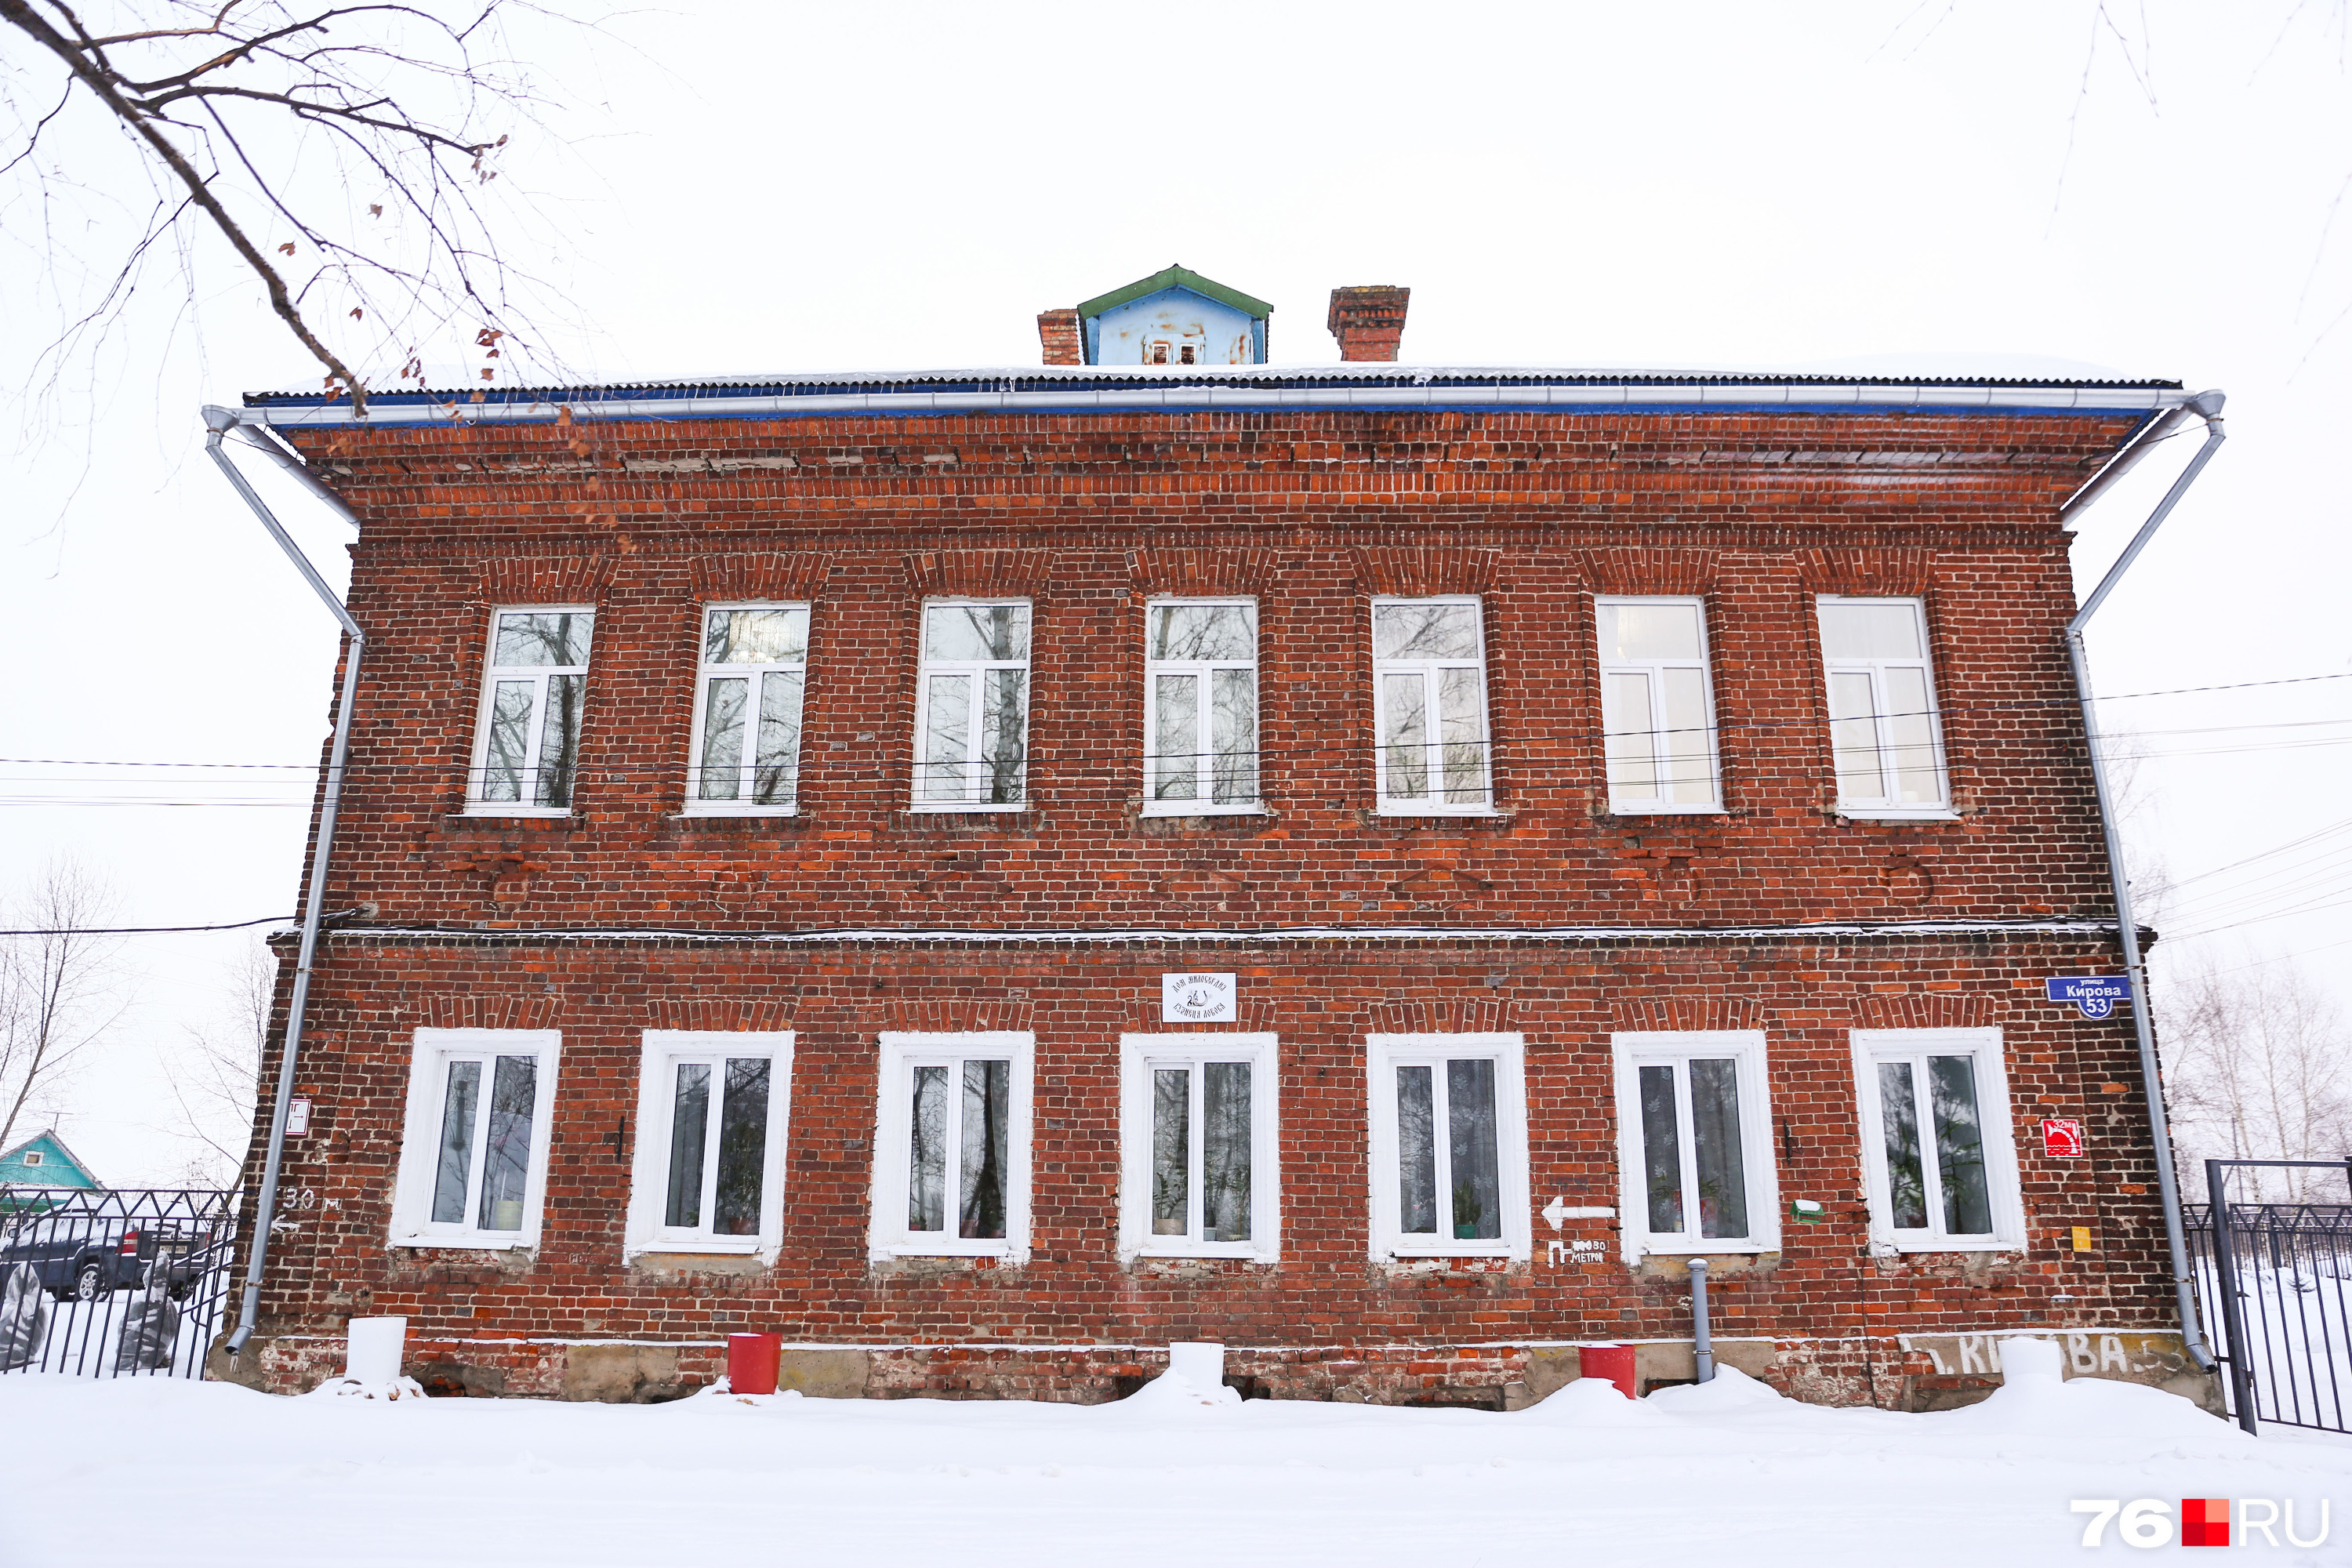 Дом милосердия появился в Поречье-Рыбном в 2018 году